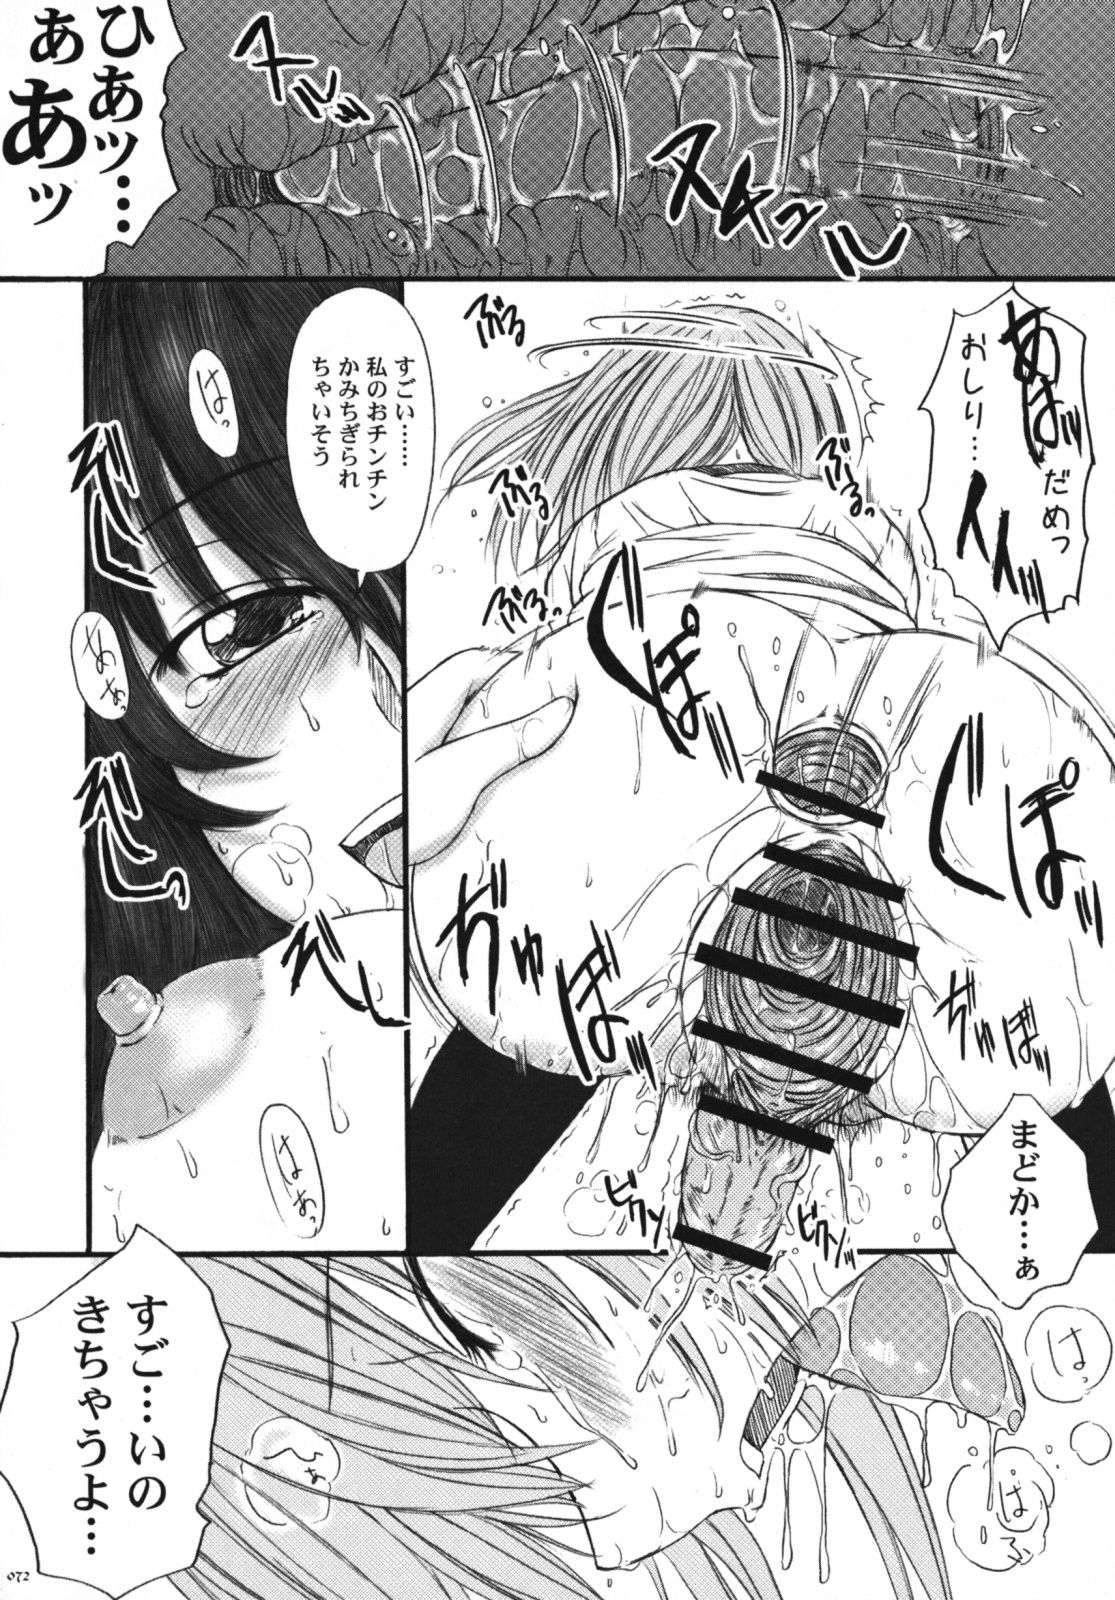 [Kesson Shoujo] Kesson Shoujo Memories 3 -Futanari Ero Manga- 71